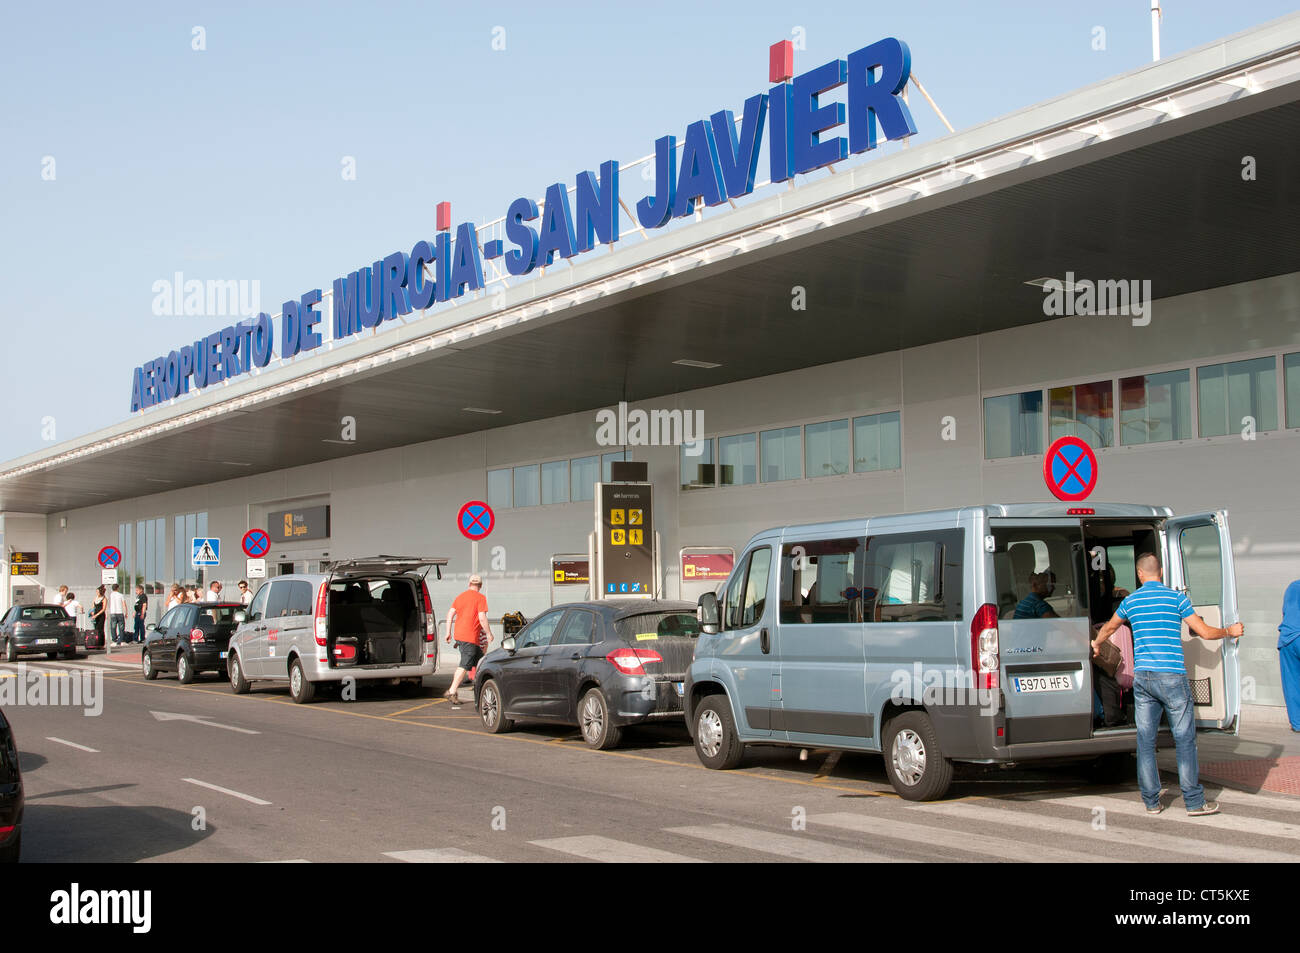 Murcia Airport San Javier Southern Spain Stock Photo